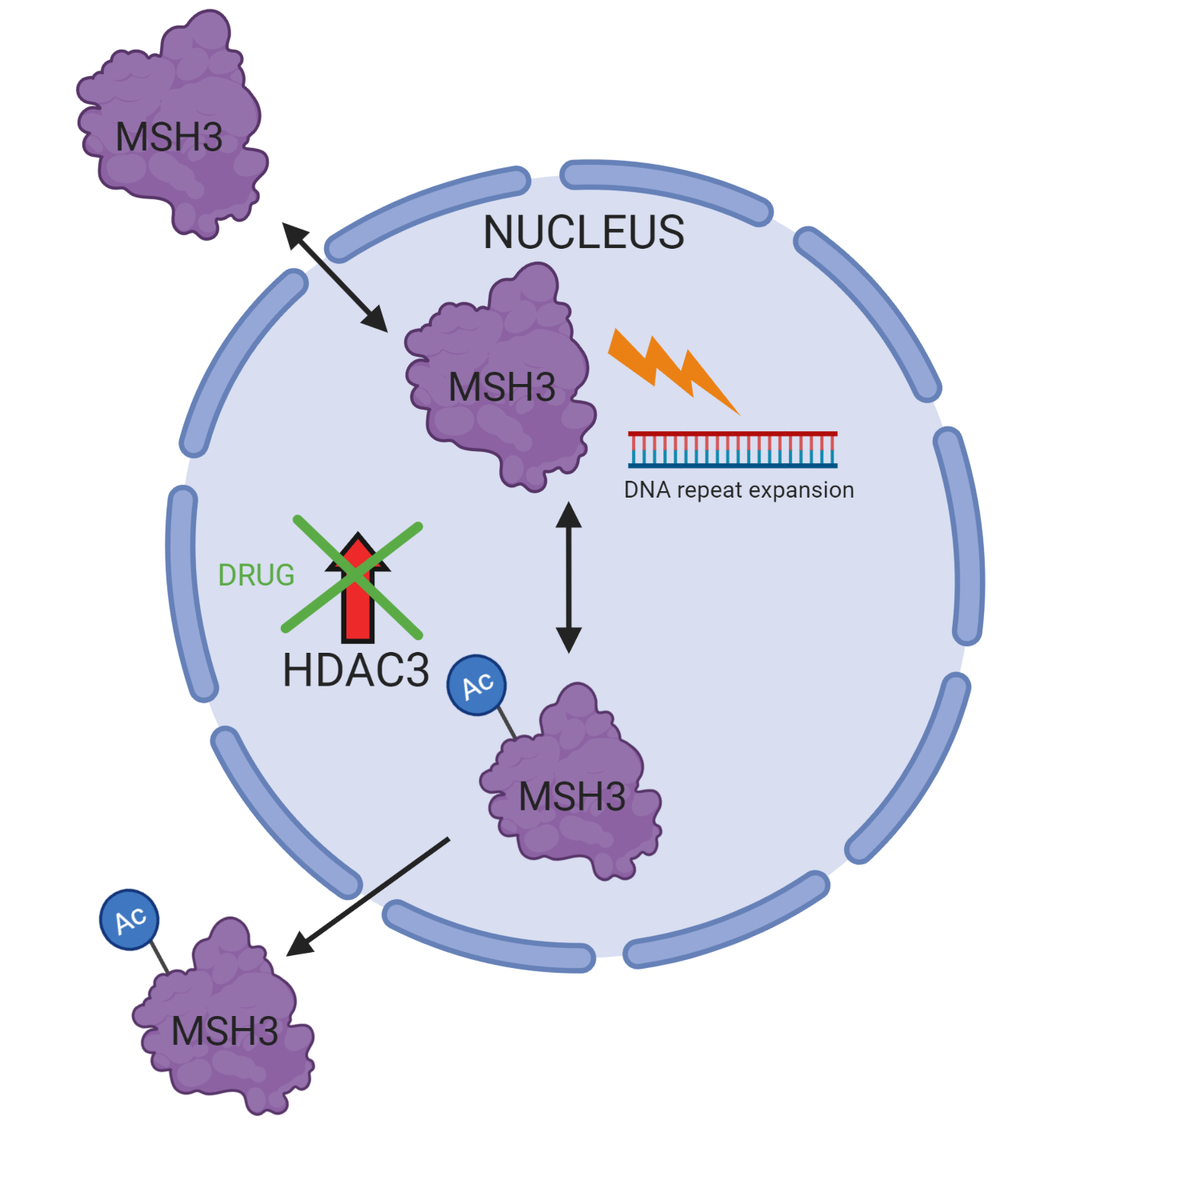 Wie reduziert das Medikament die DNA-Verlängerung? Wenn eine Acetyl-Gruppe (AC) zum MSH3-Eiweiß hinzugefügt wird, bewegt es sich aus dem Nukleus heraus, wo es an die CAG-Repeats herankommen würde. So kann es keine weitere Verlängerung verursachen. Das Enzym HDAC3 entfernt die Acetyl-Gruppe, das Reparatureiweiß MSH3 bleibt also am Ort und führt zu mehr Wiederholungen. Eine Behandlung von HDAC3 bewirkt, dass es nicht länger die Acetyl-Gruppe entfernen kann. Das MSH3-Protein wird dadurch außerhalb des Nukleus festgehalten. (Schematische Zeichnung mit BioRender)   